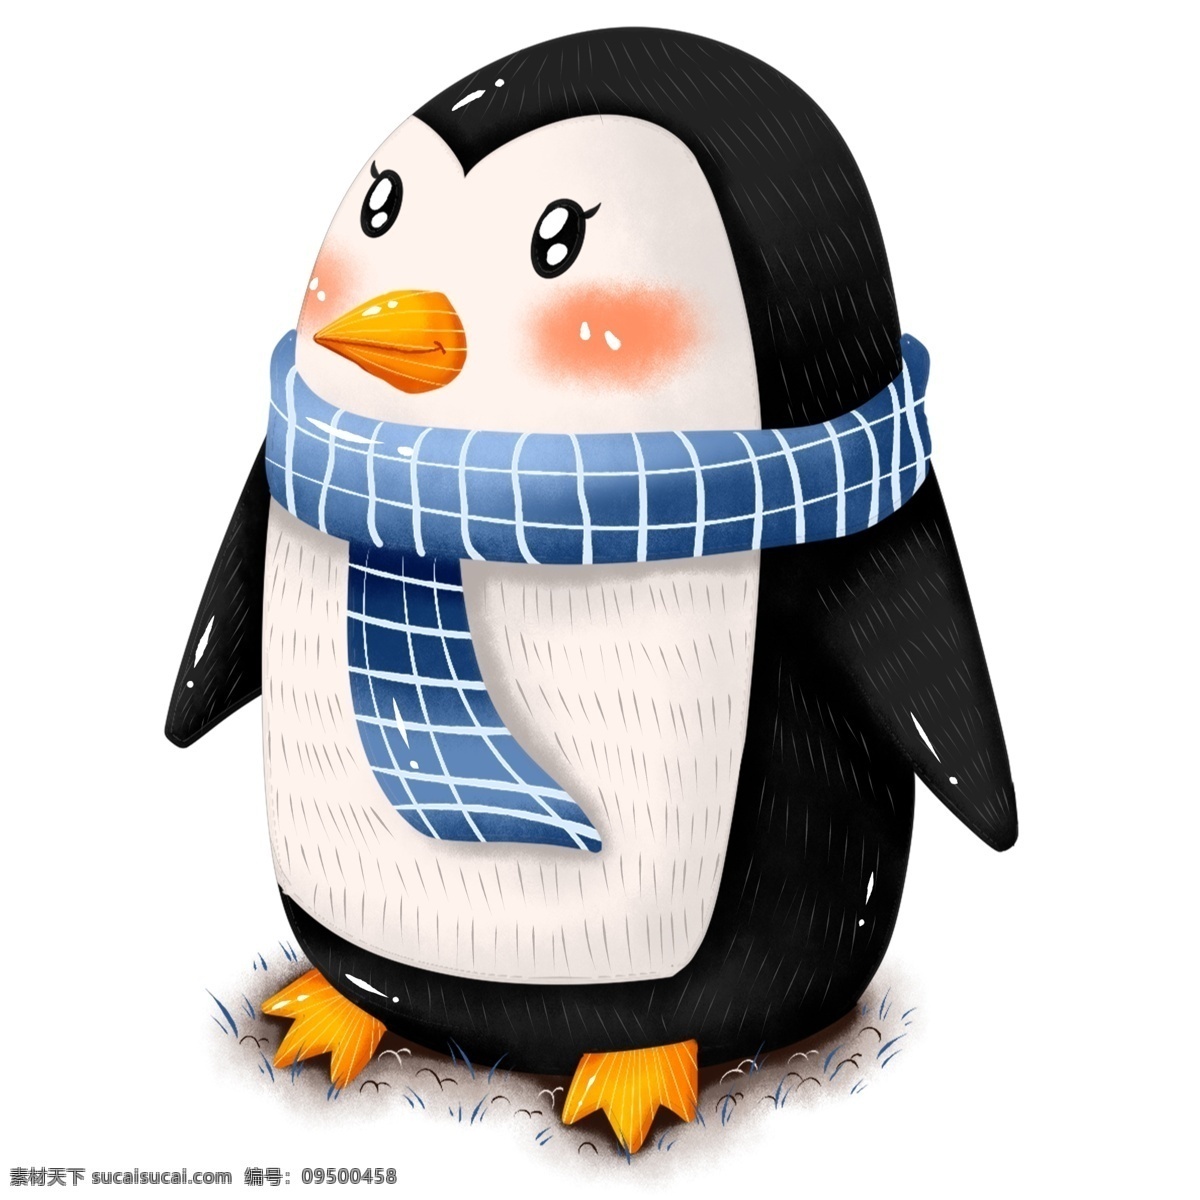 原创 手绘 动物 企鹅 冬季 冬日 围巾 元素 海报素材 商用